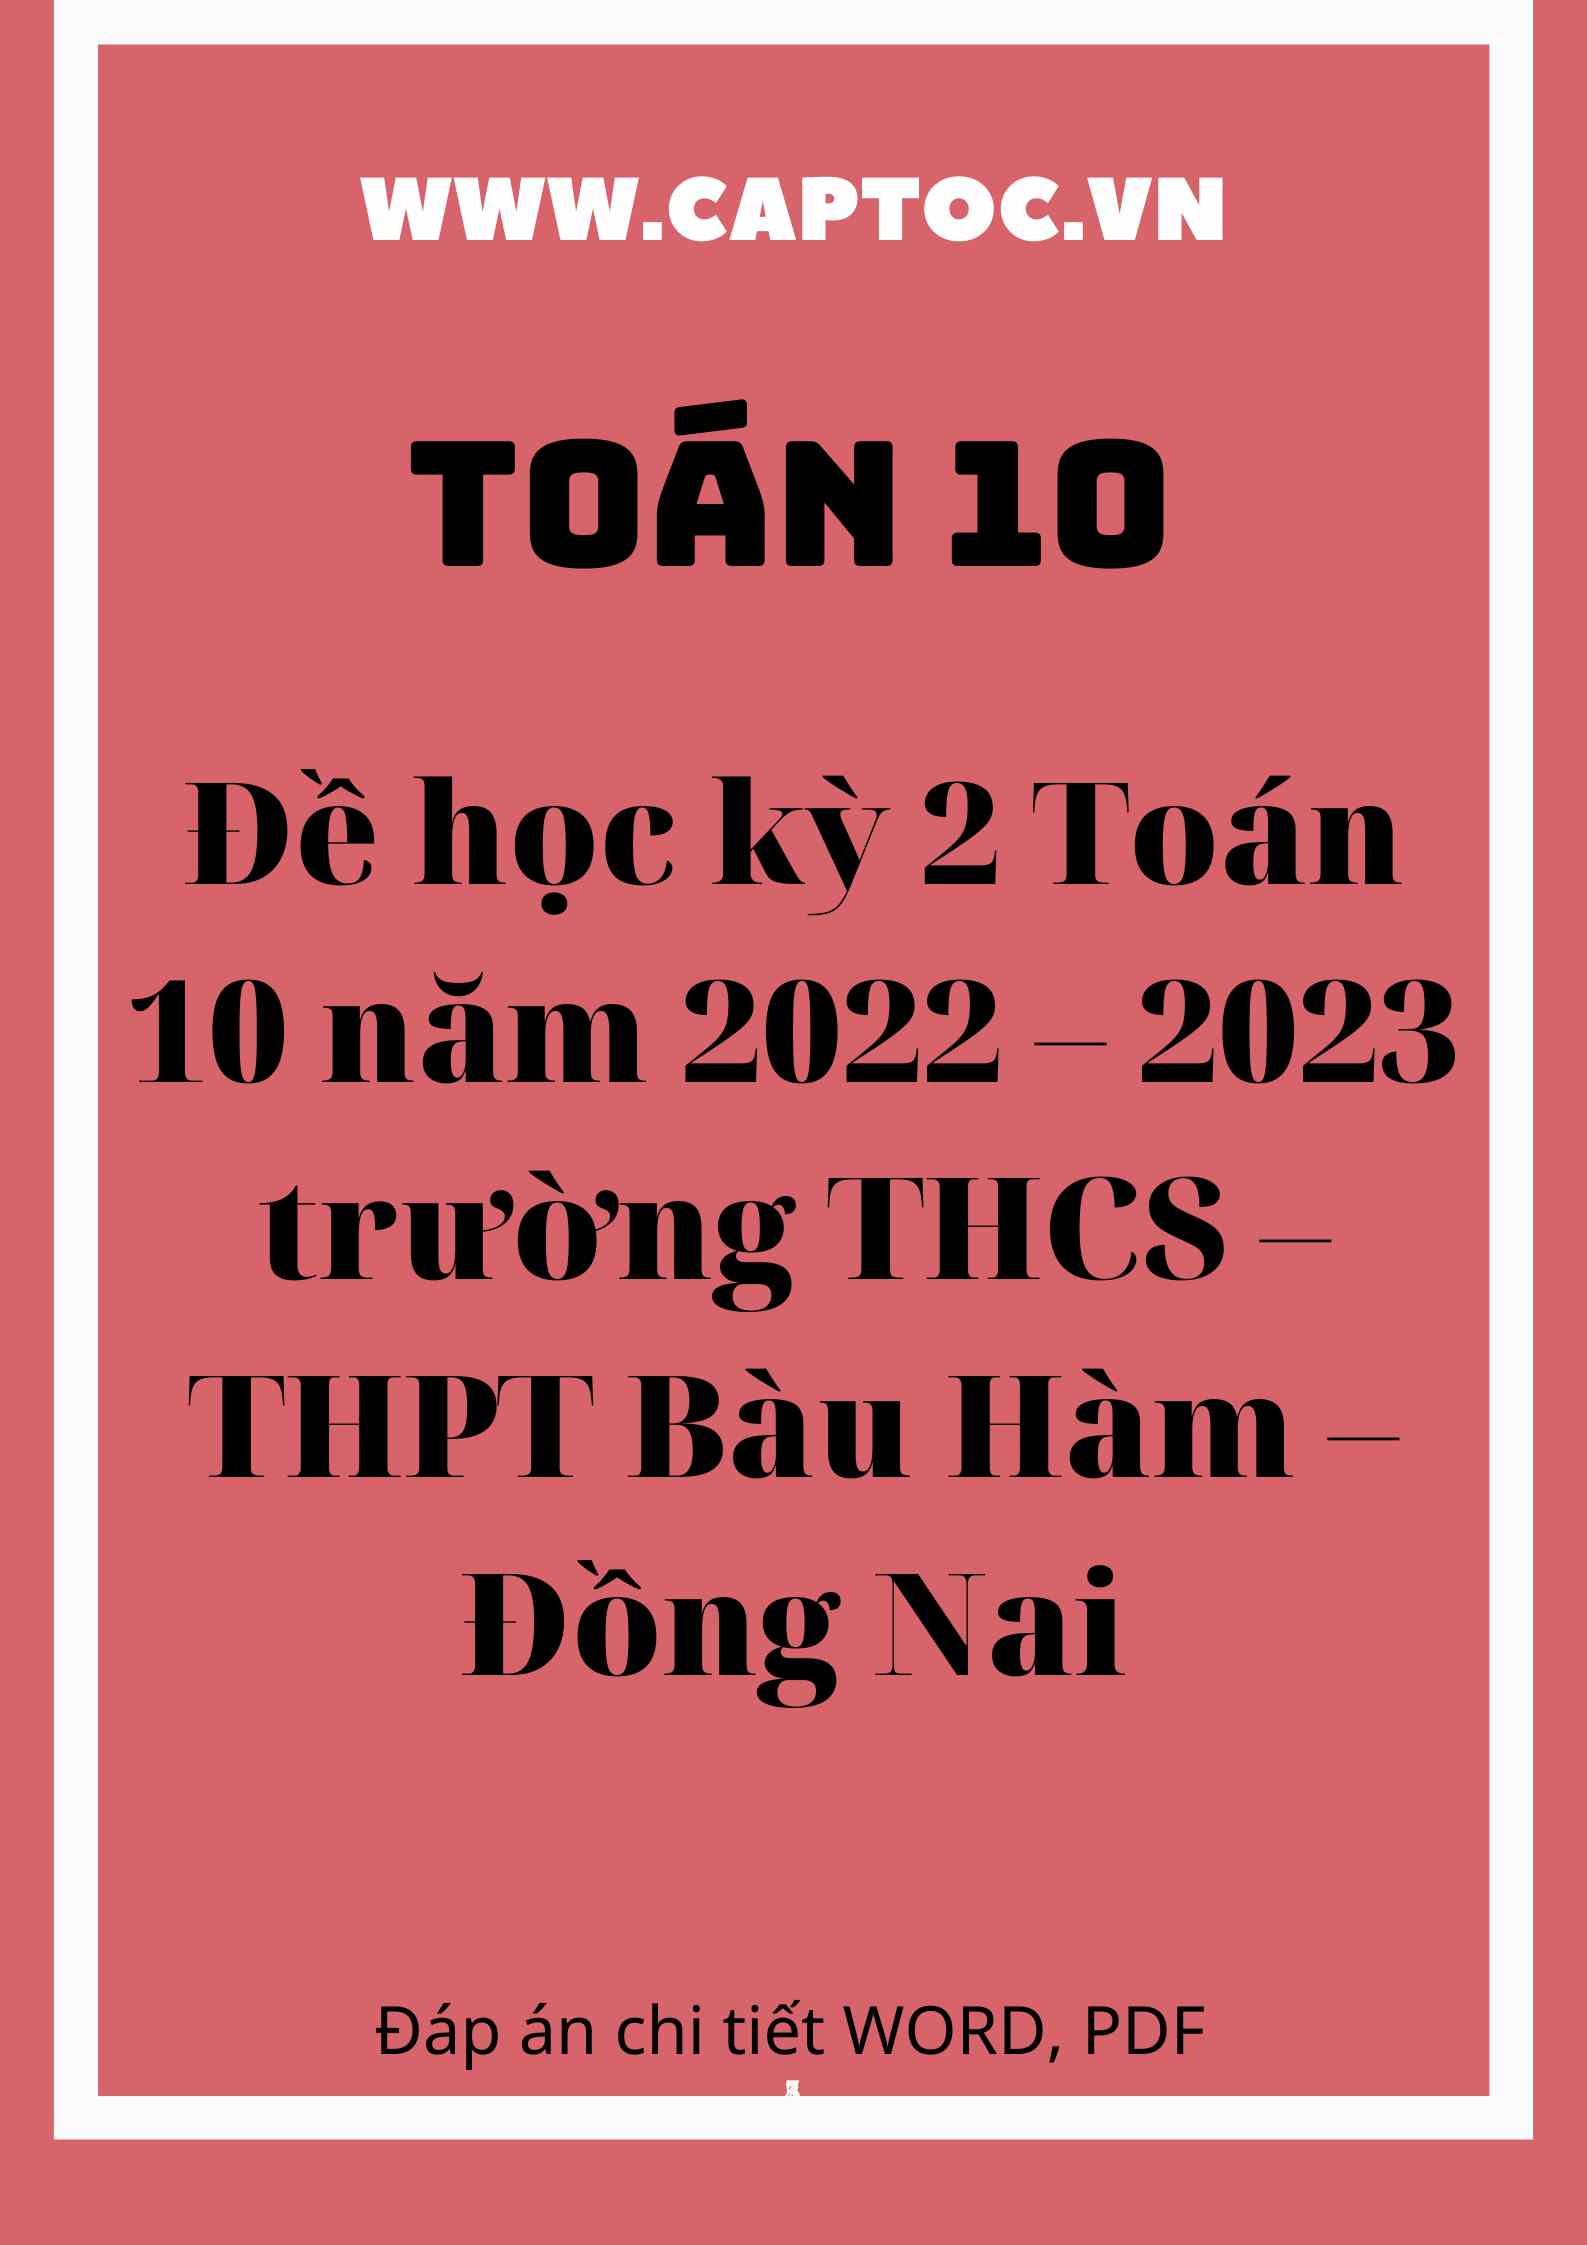 Đề học kỳ 2 Toán 10 năm 2022 – 2023 trường THCS – THPT Bàu Hàm – Đồng Nai